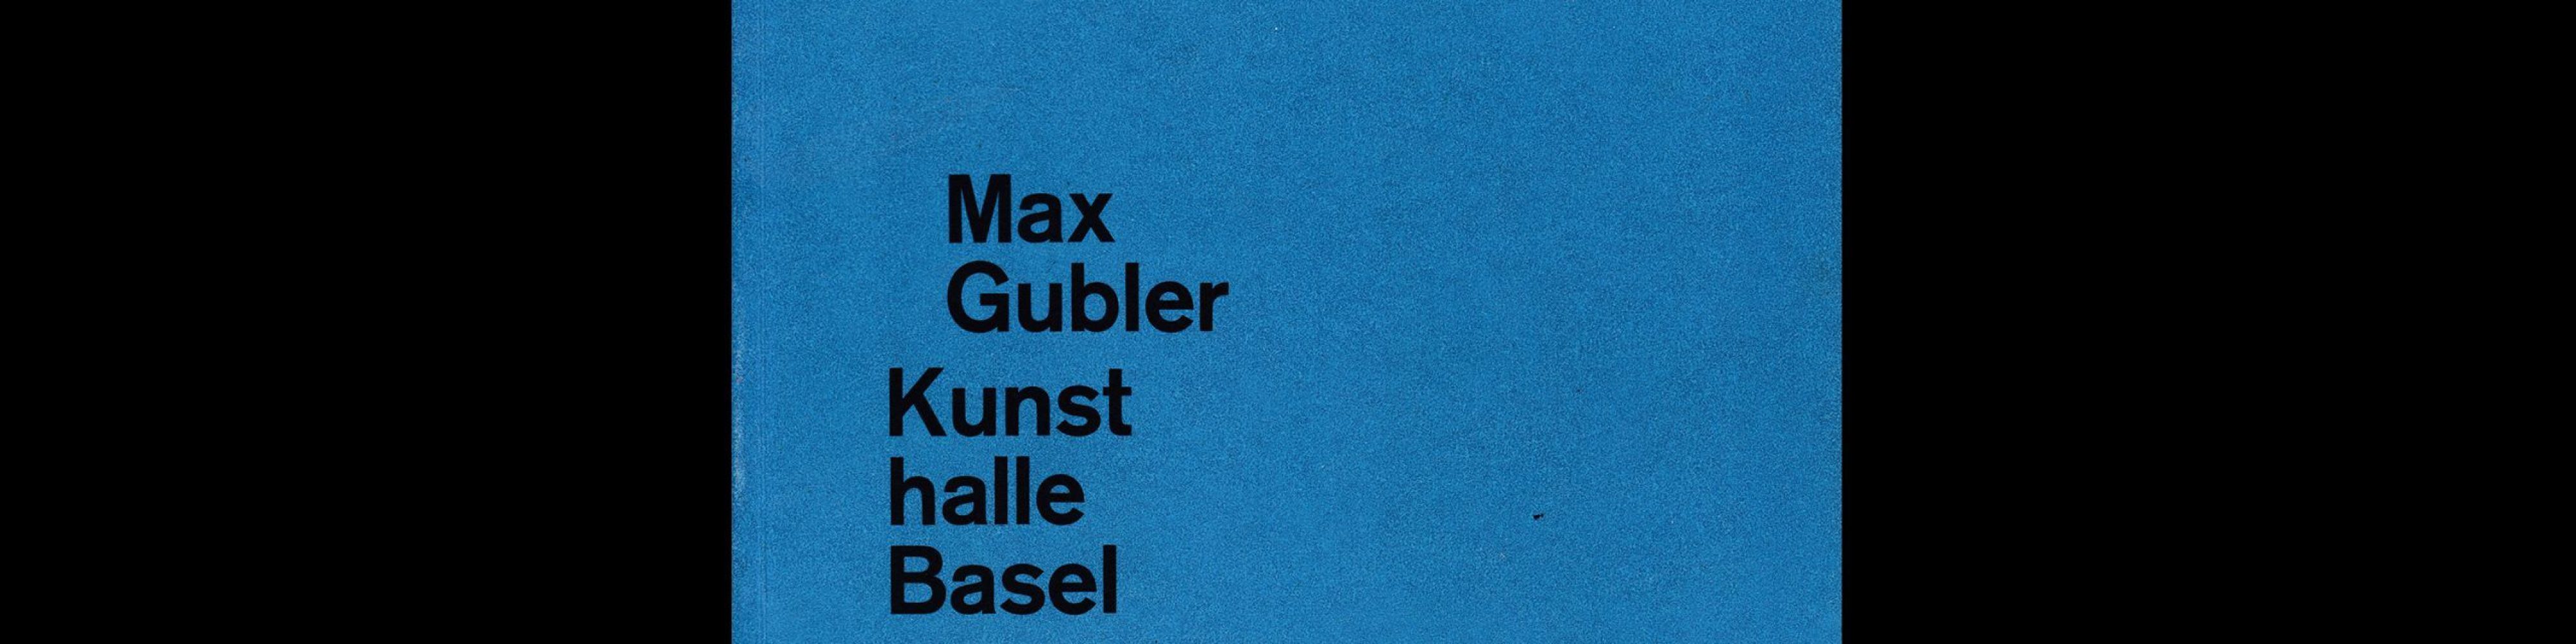 Max Gubler, Kunsthalle Basel, 1959 designed by Armin Hofmann